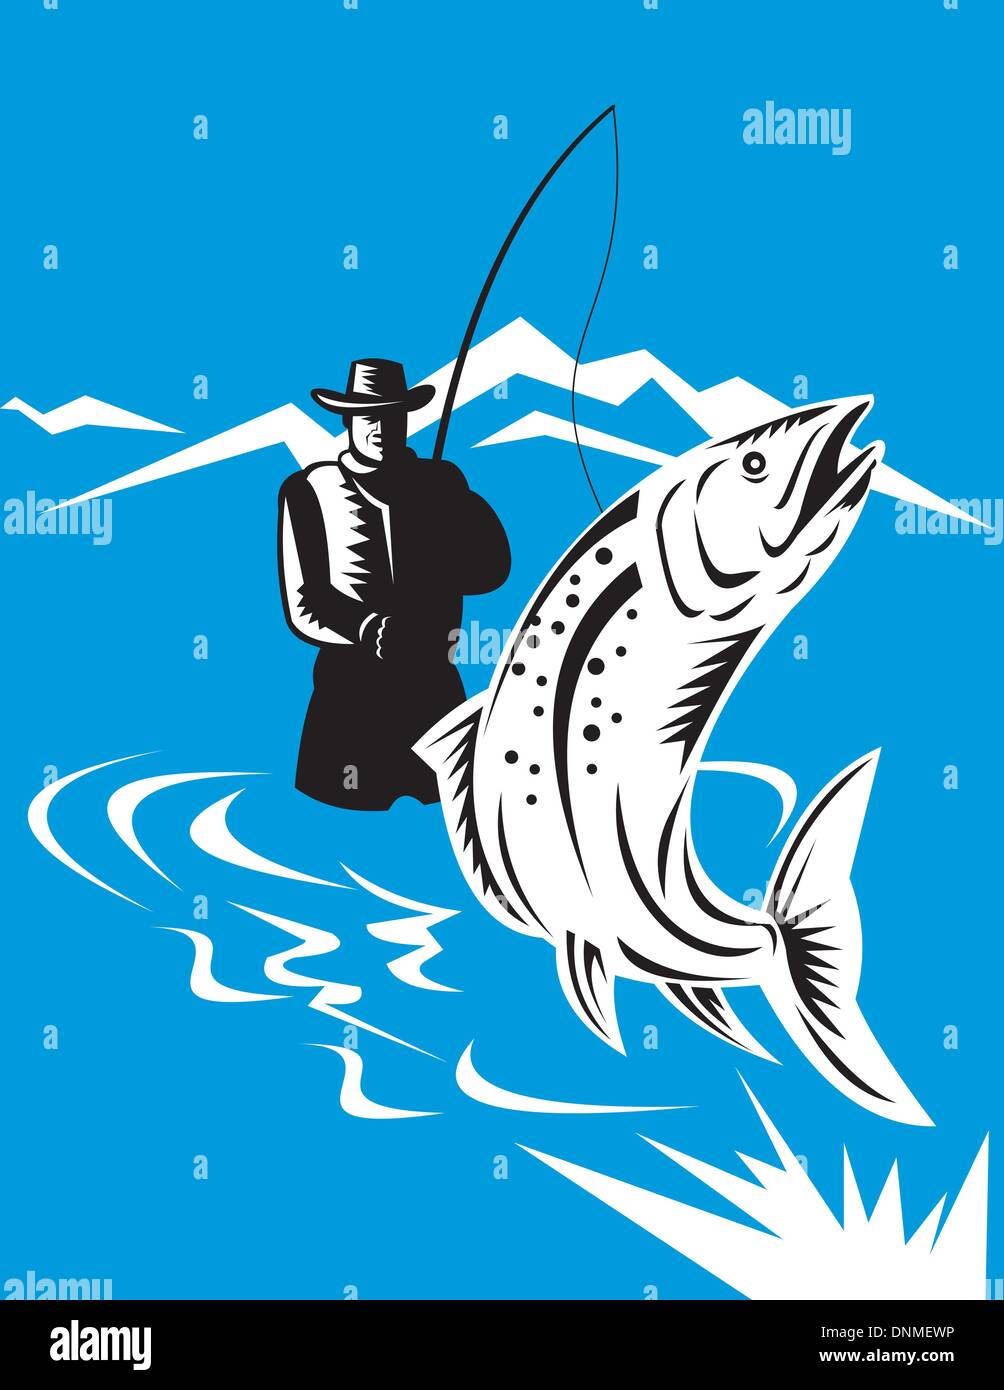 Illustrazione di un pesce trote jumping riavvolta dal pescatore a mosca fatto in stile retrò Illustrazione Vettoriale